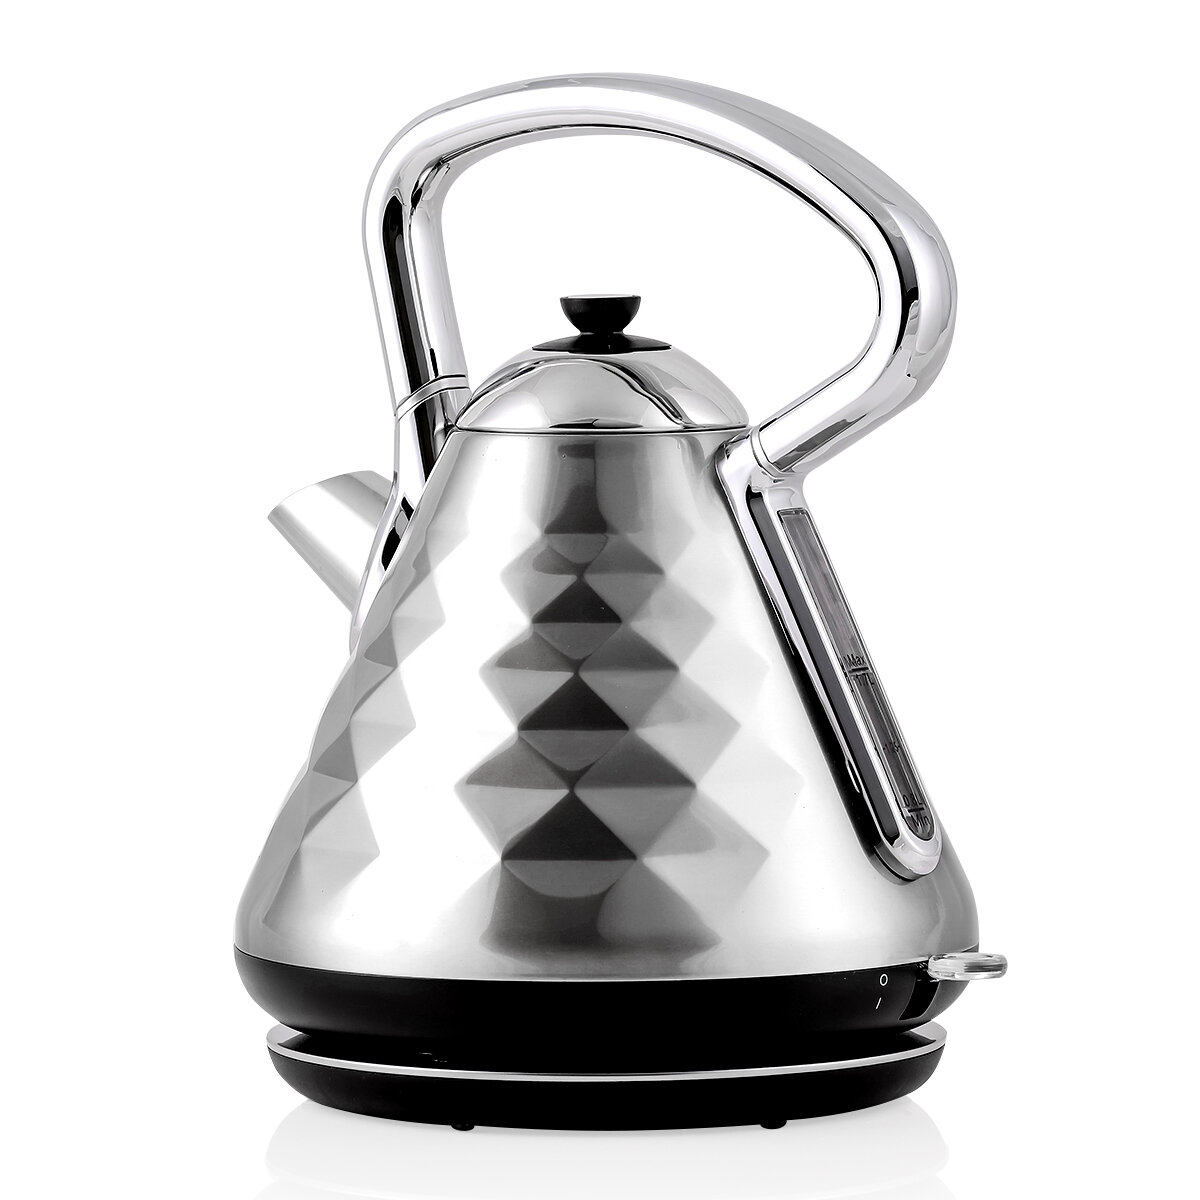 ovente electric tea kettle